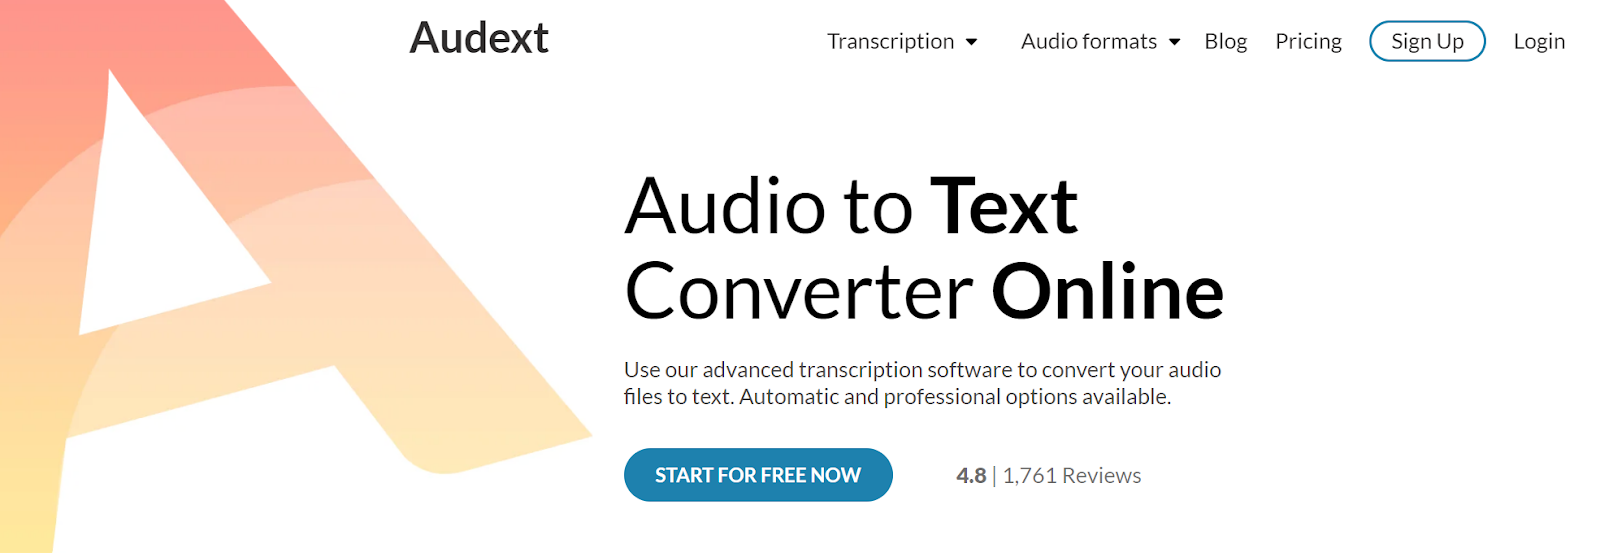 audext podcast transcription services